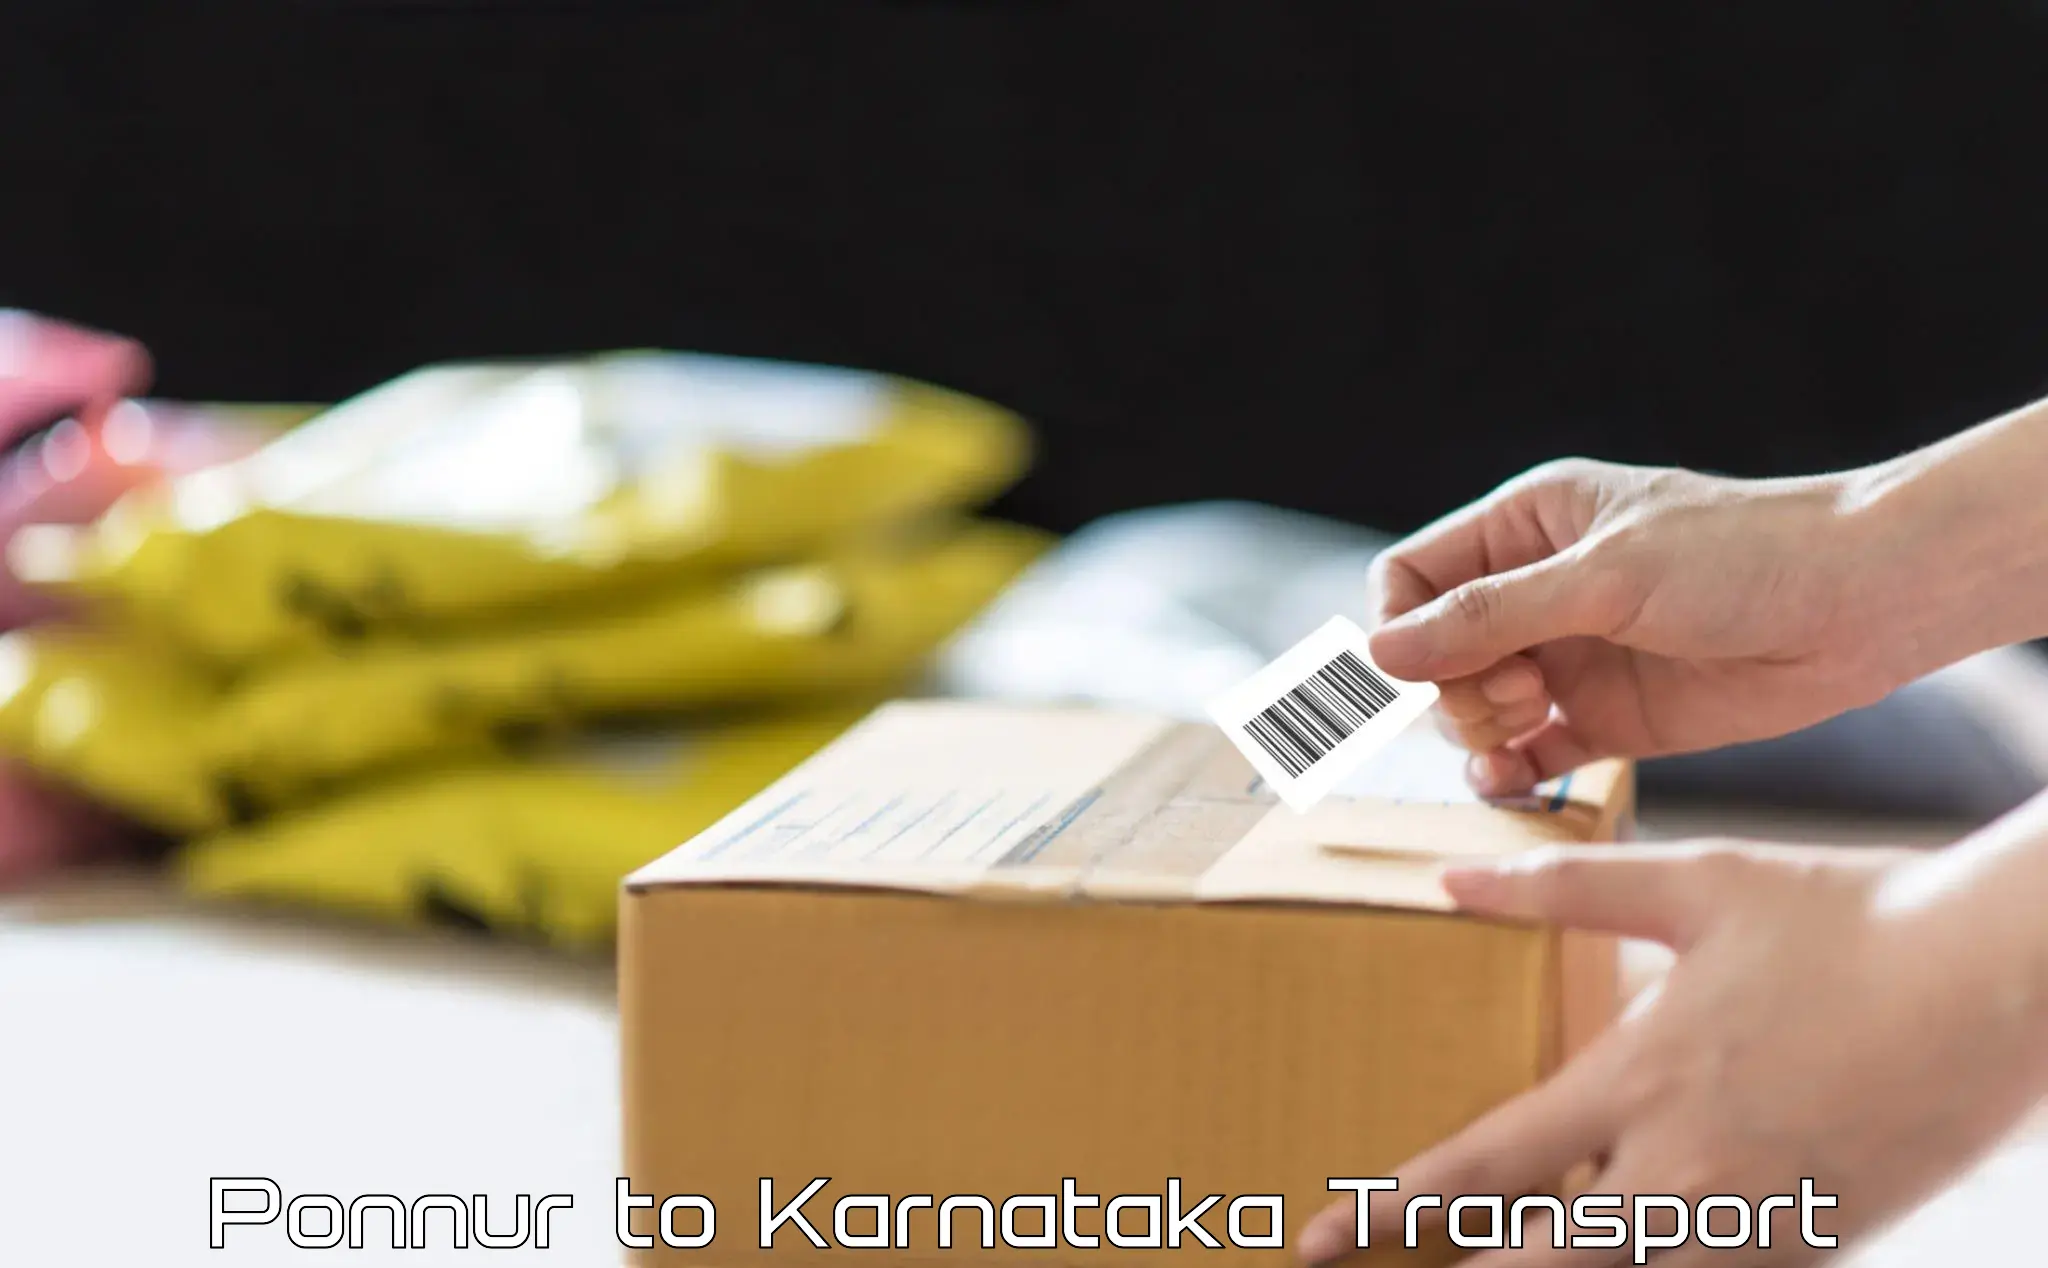 Transport shared services Ponnur to Jayanagar